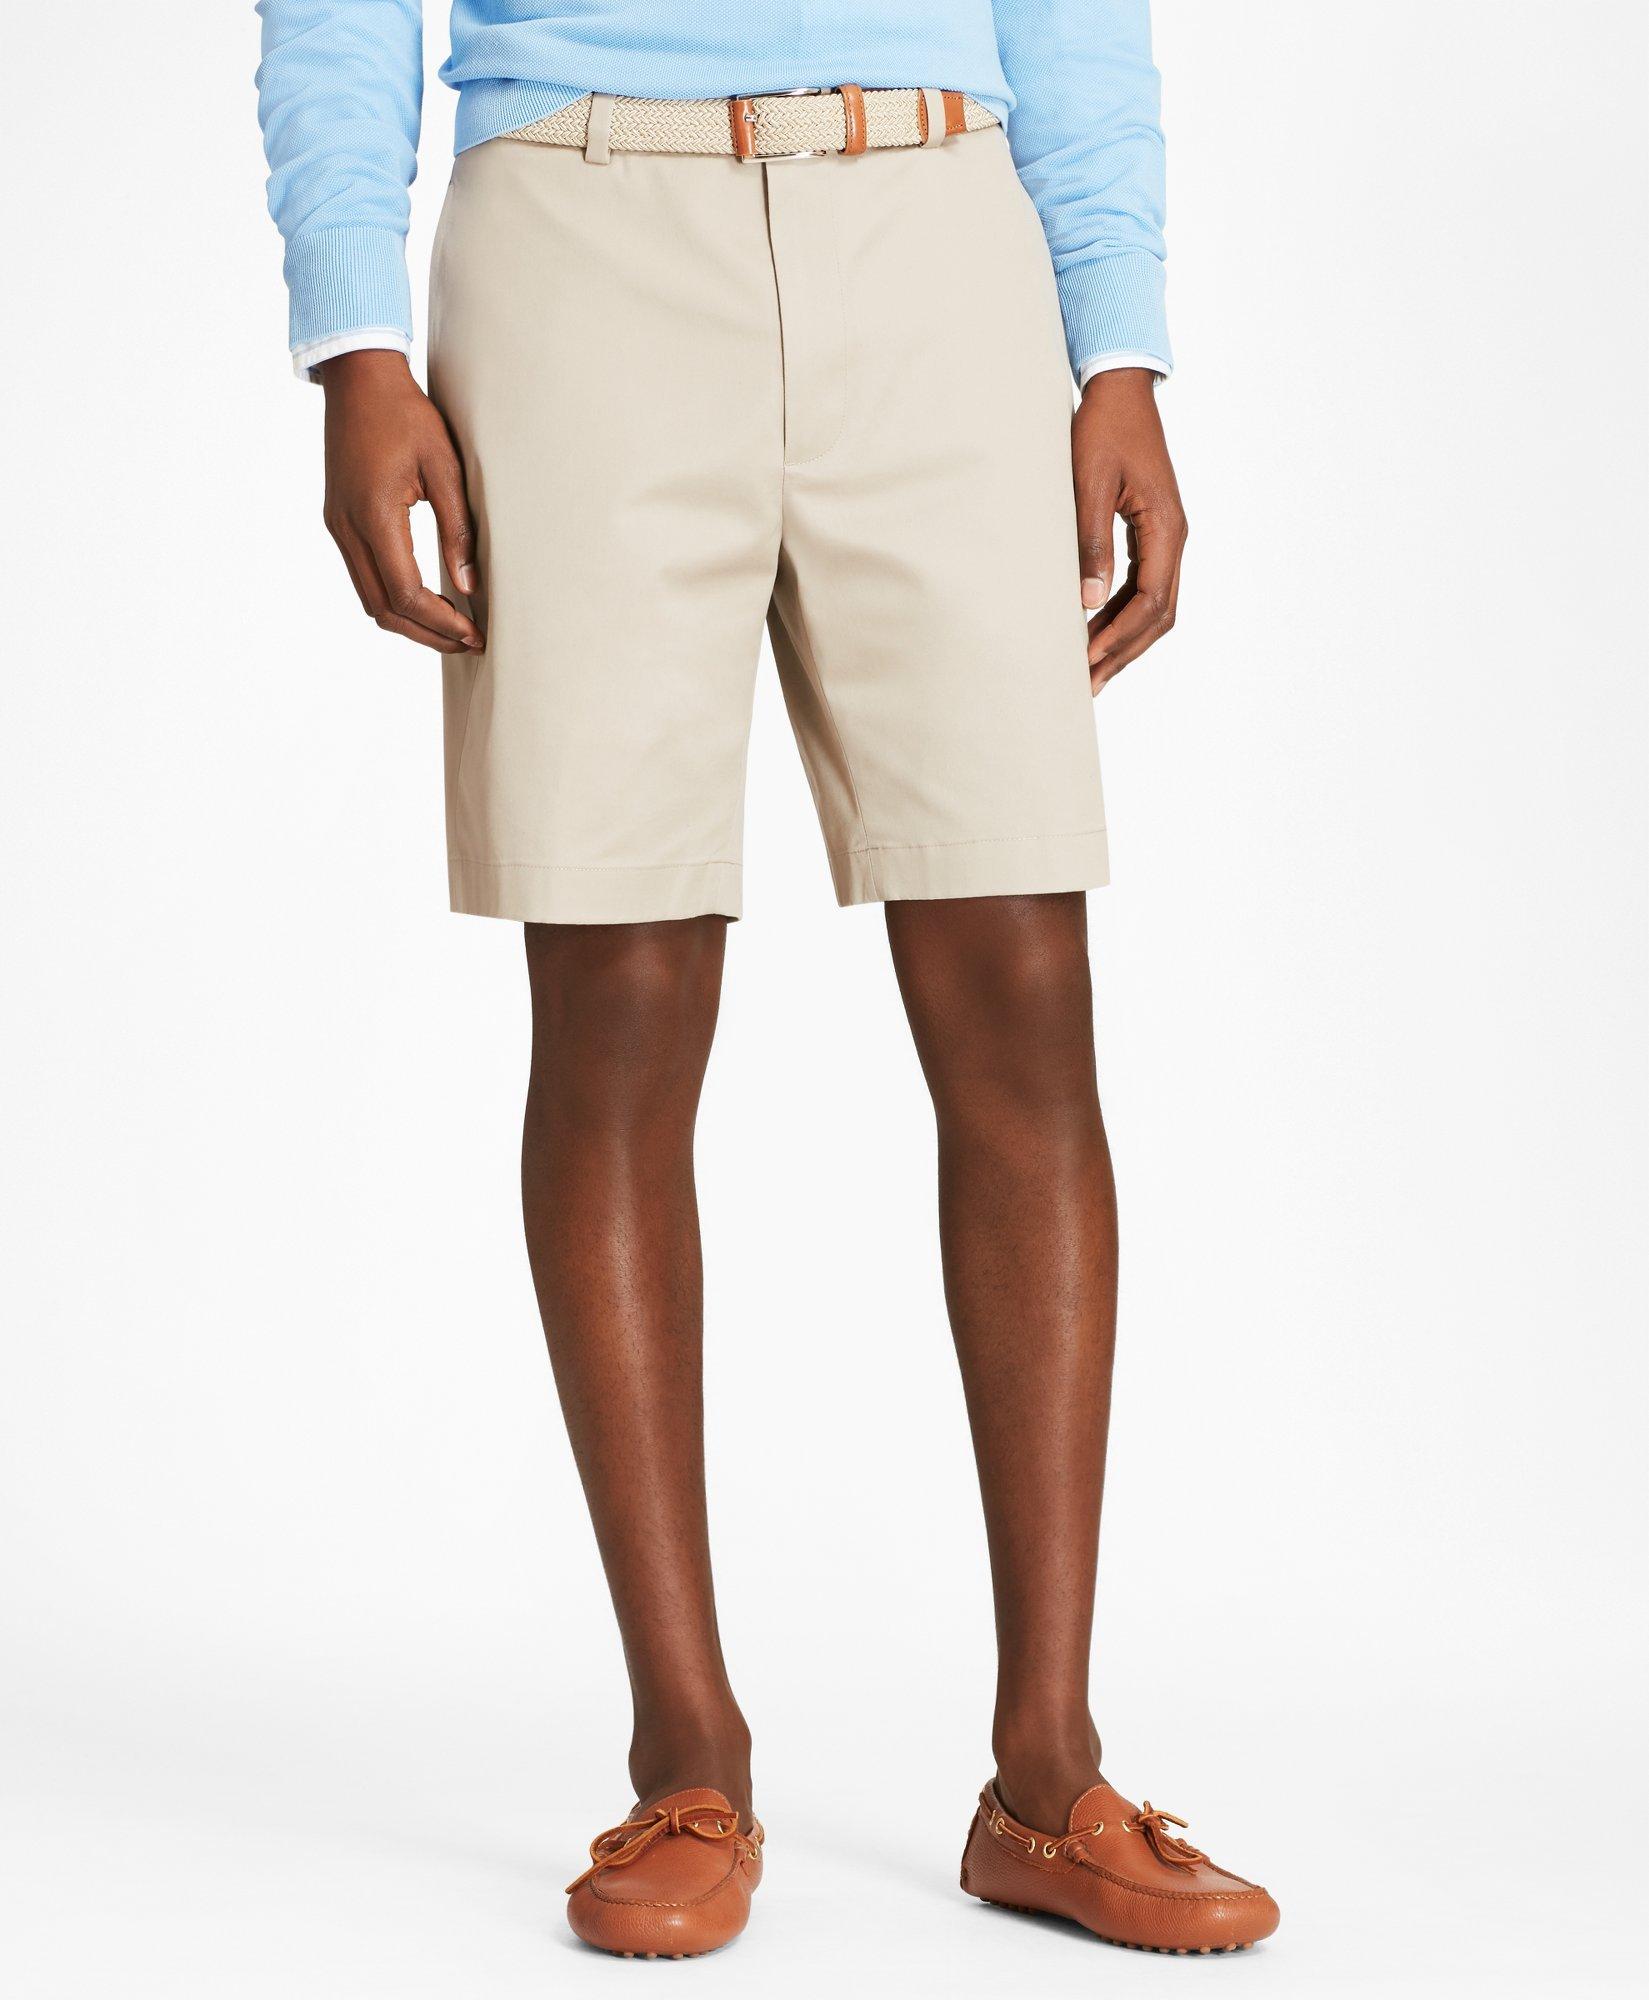 Brooks Brothers 9" Flat Front Stretch Advantage Chino Shorts | Khaki | Size 30